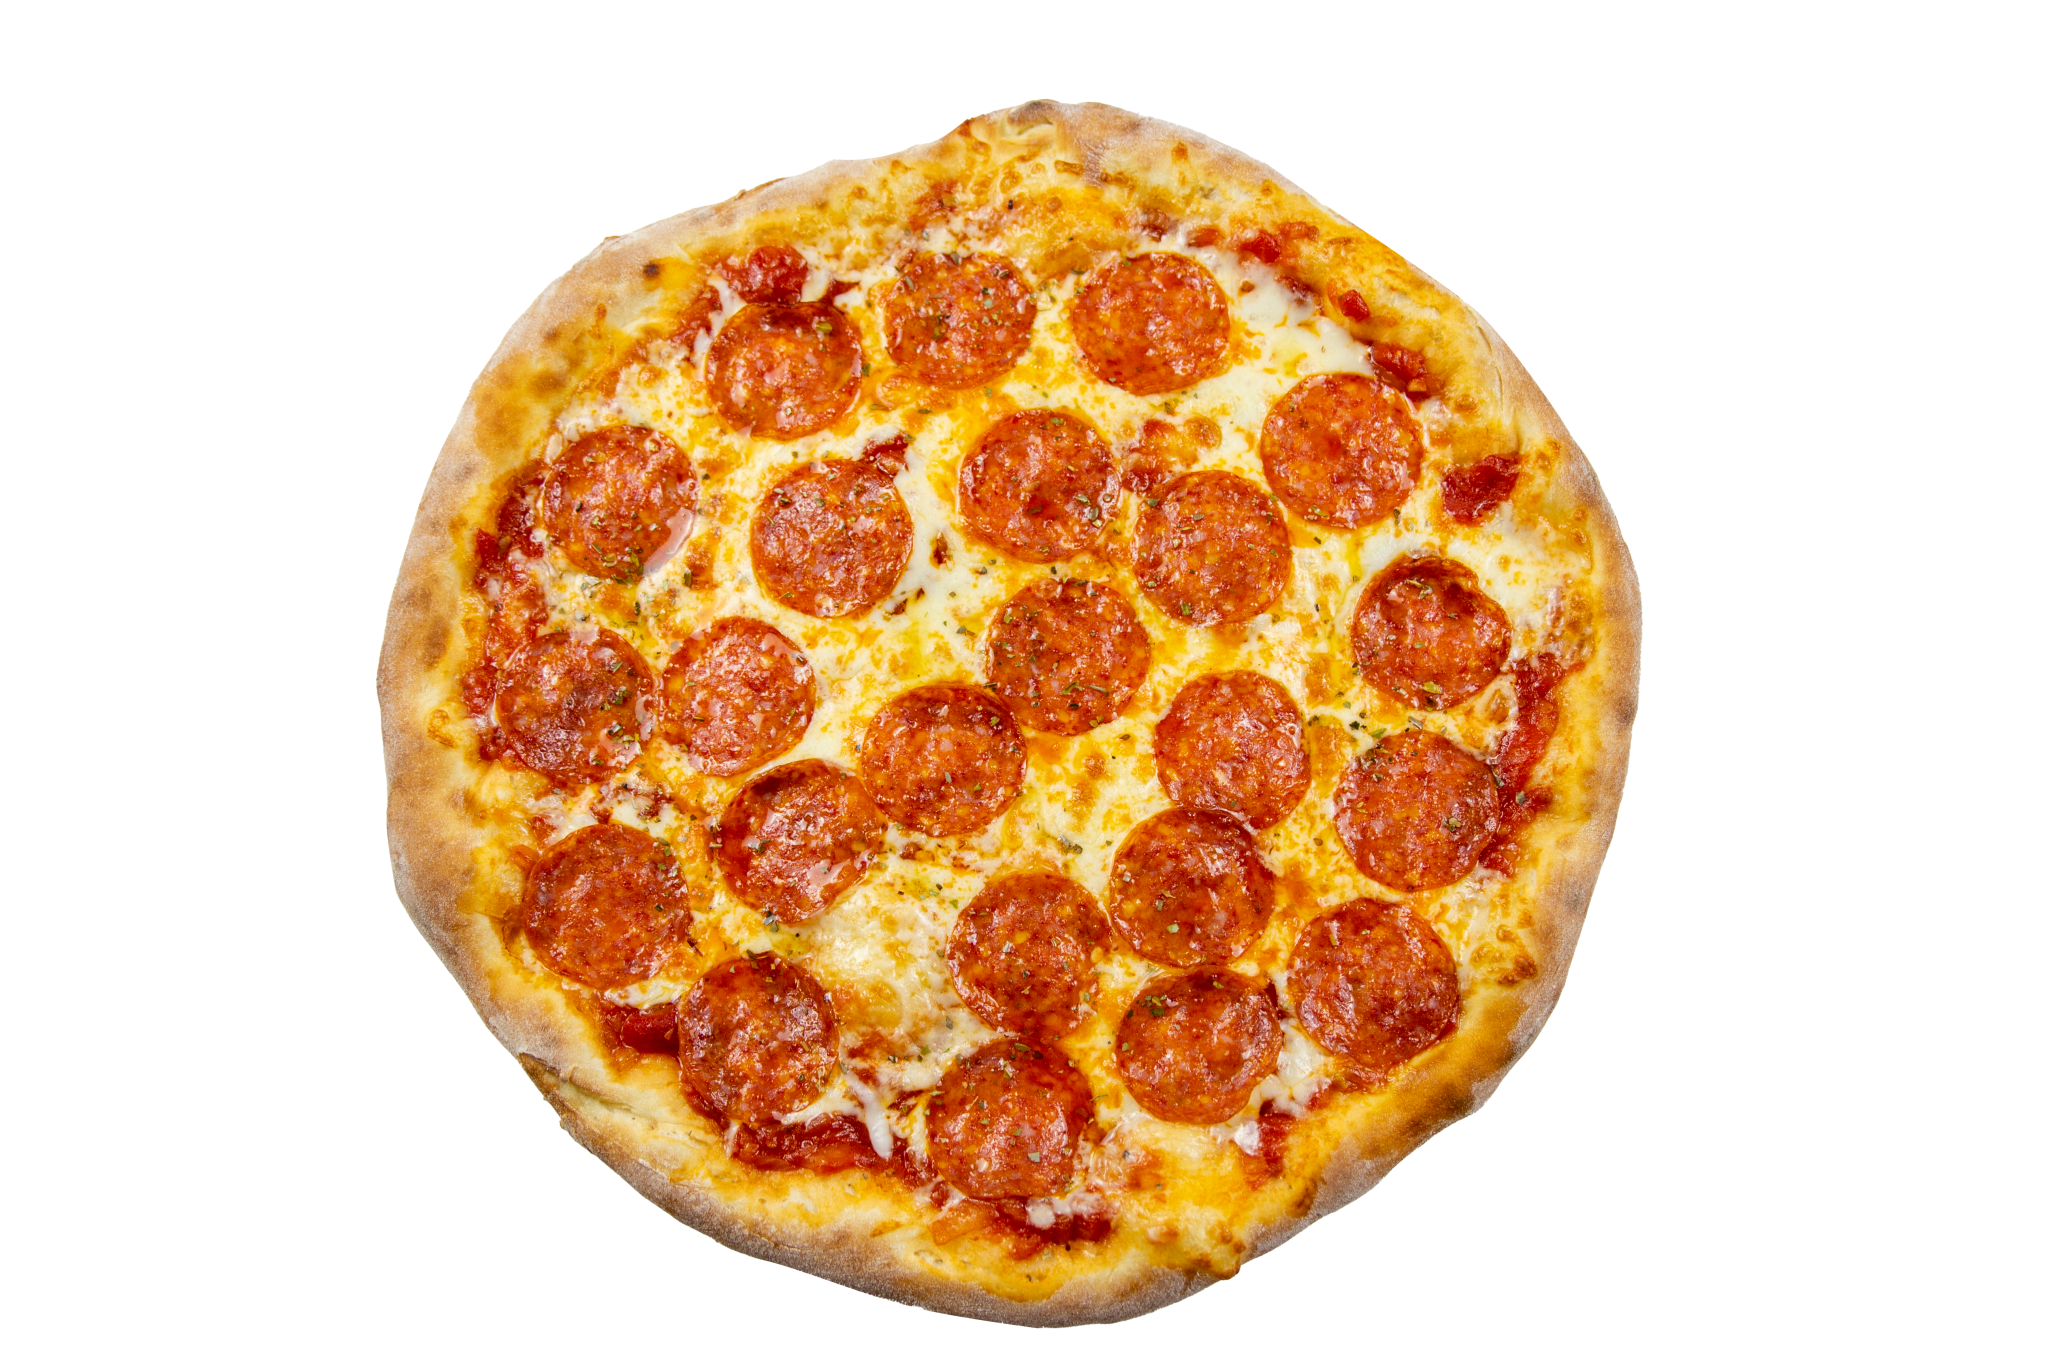 сколько калорий в одном куске пиццы пепперони из додо фото 95